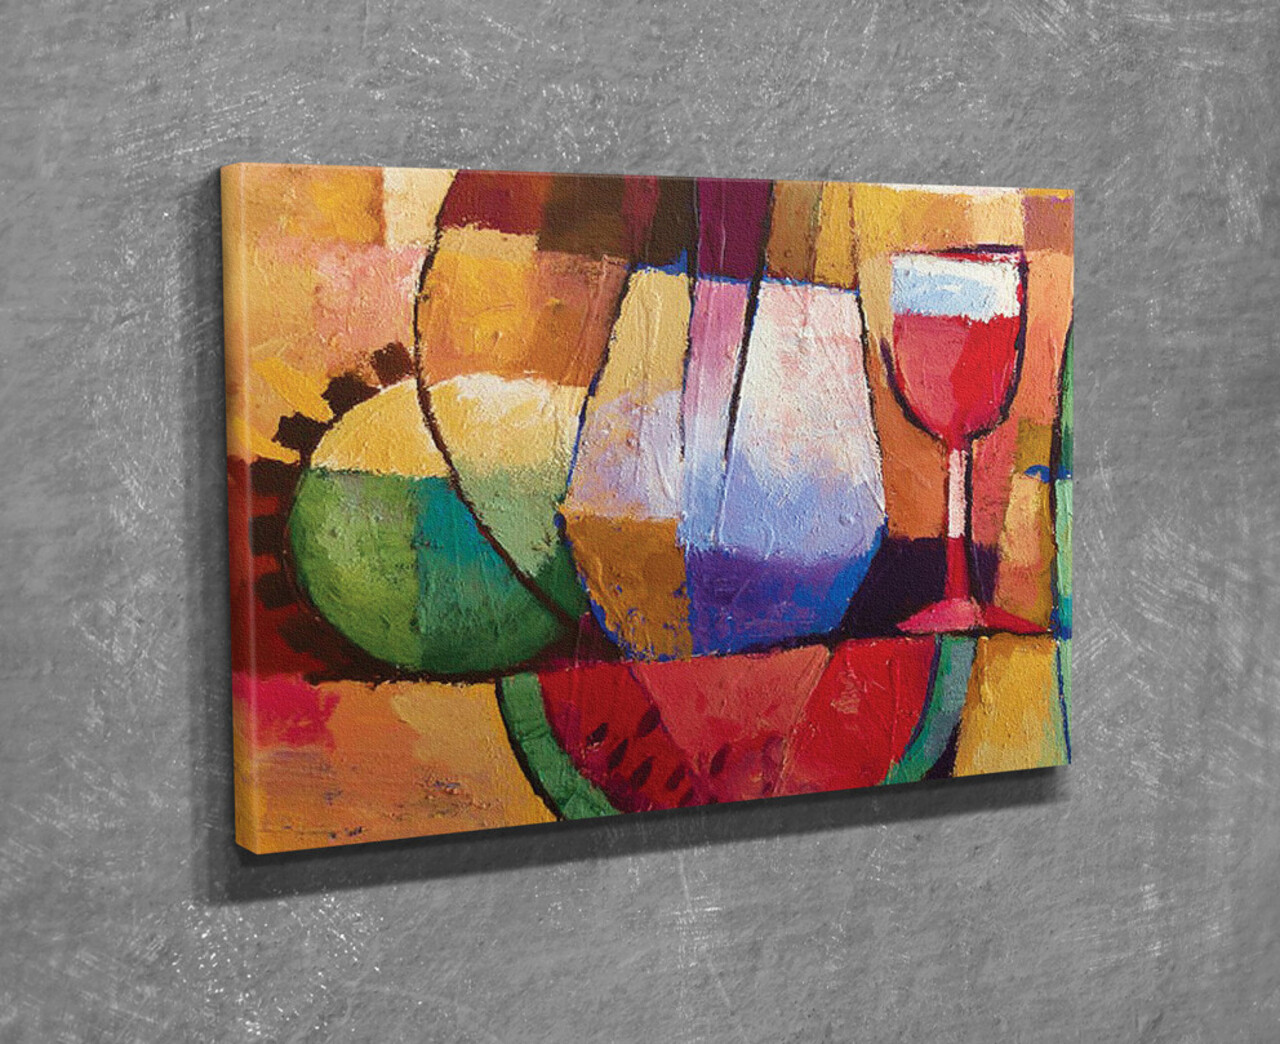 Tablou decorativ, DC345, Canvas, Lemn, Multicolor